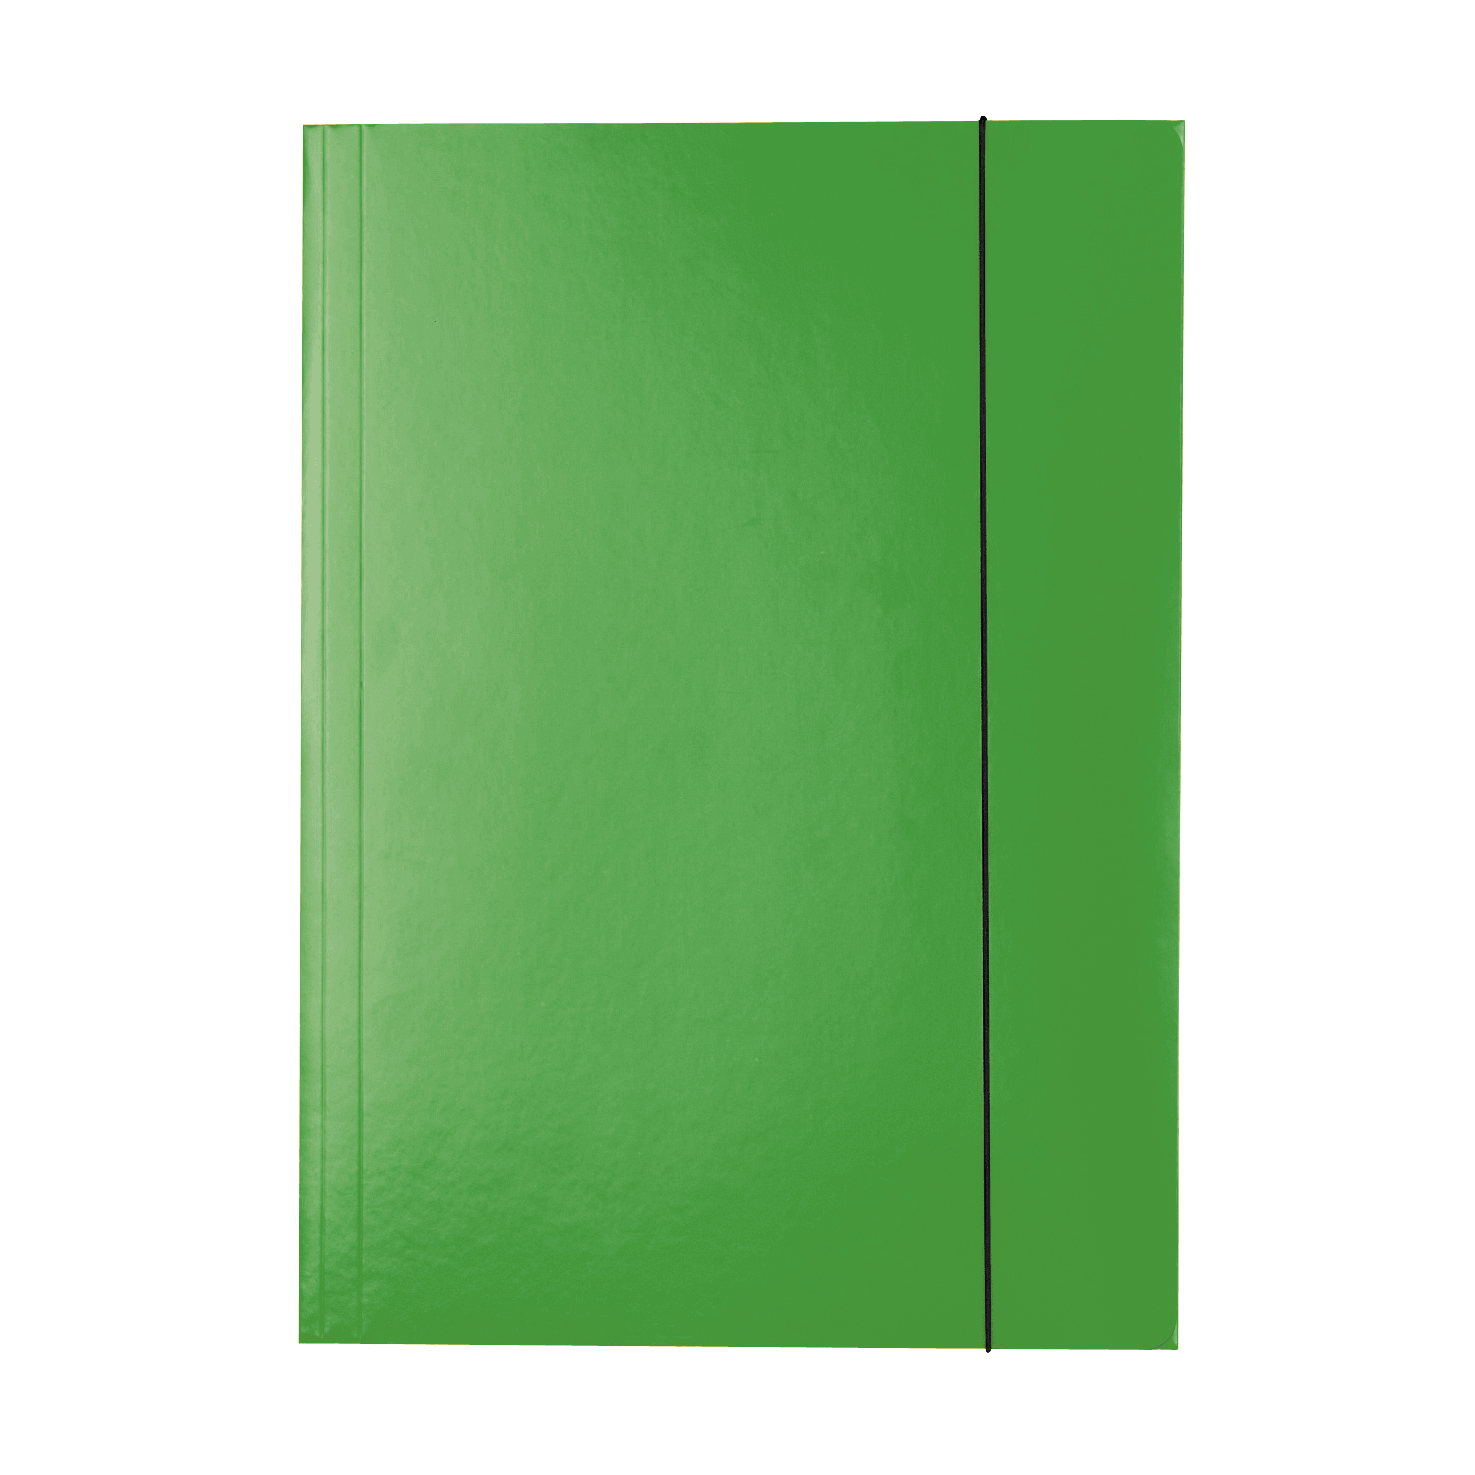 Lesklé kartonové desky Esselte A4, 3 chlopně, gumička, zelená